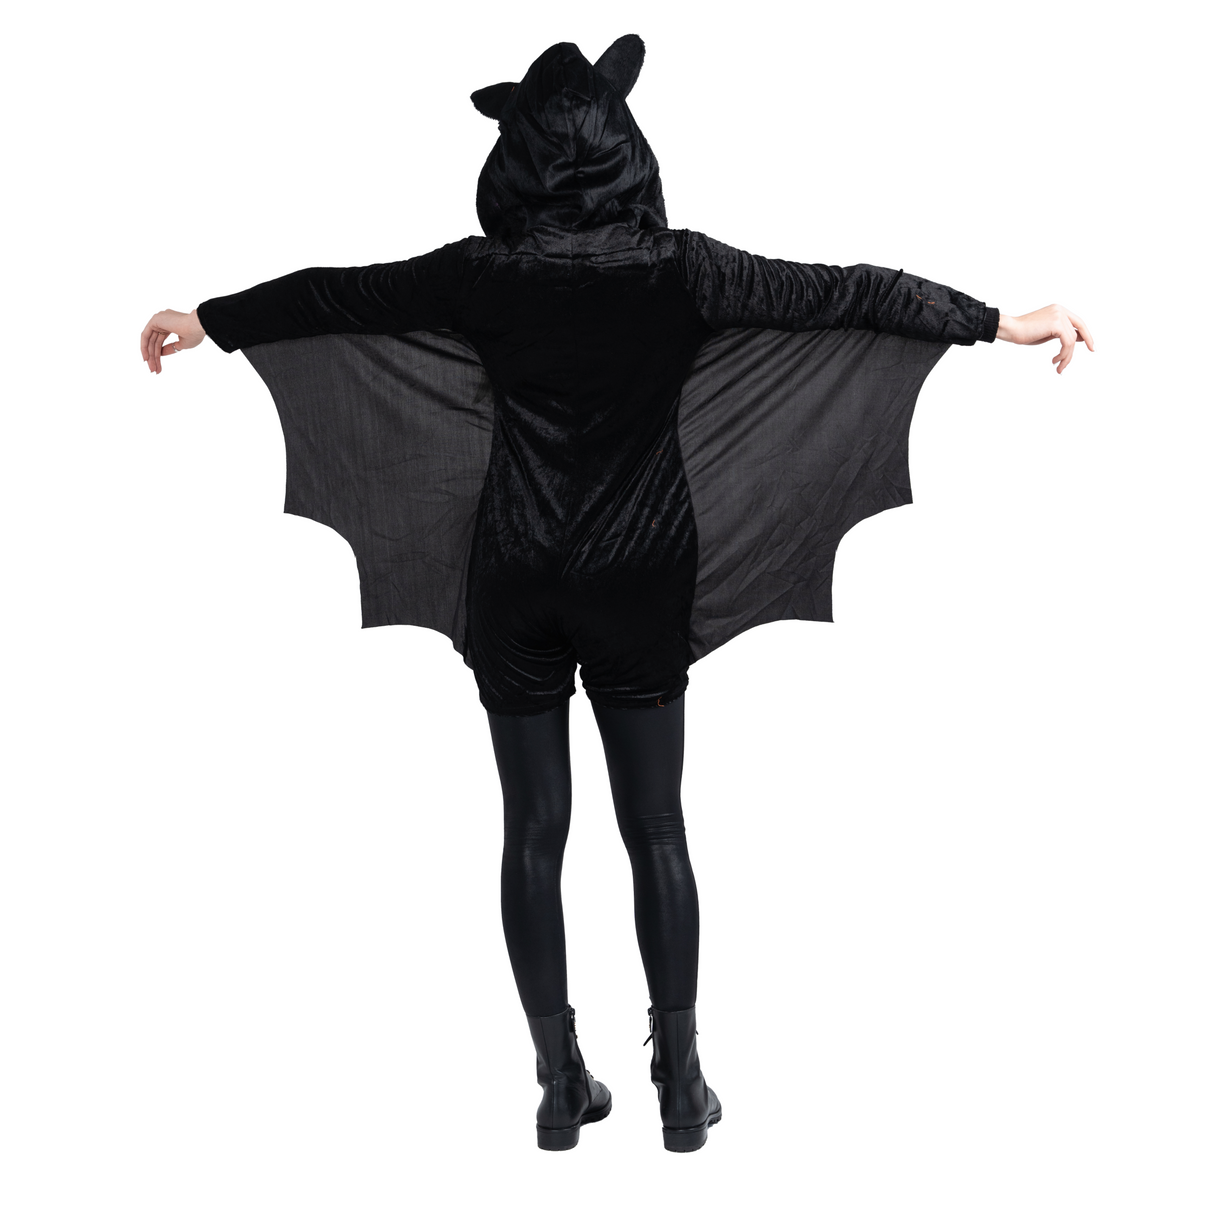 Bat Costume - Adults